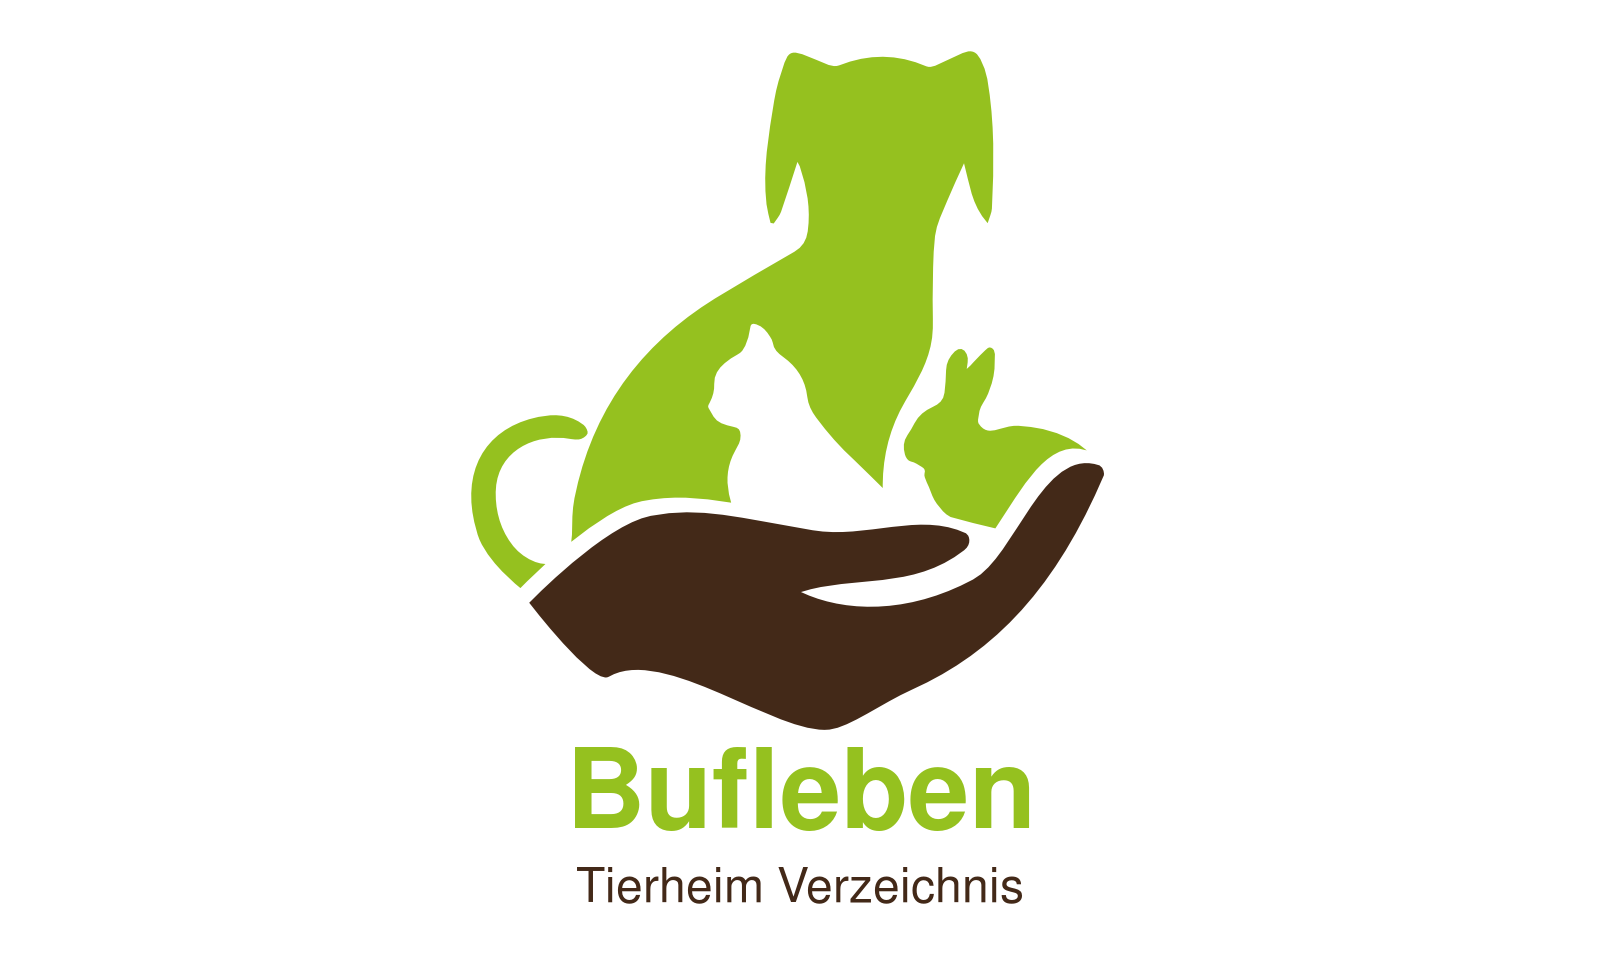 Tierheim Bufleben